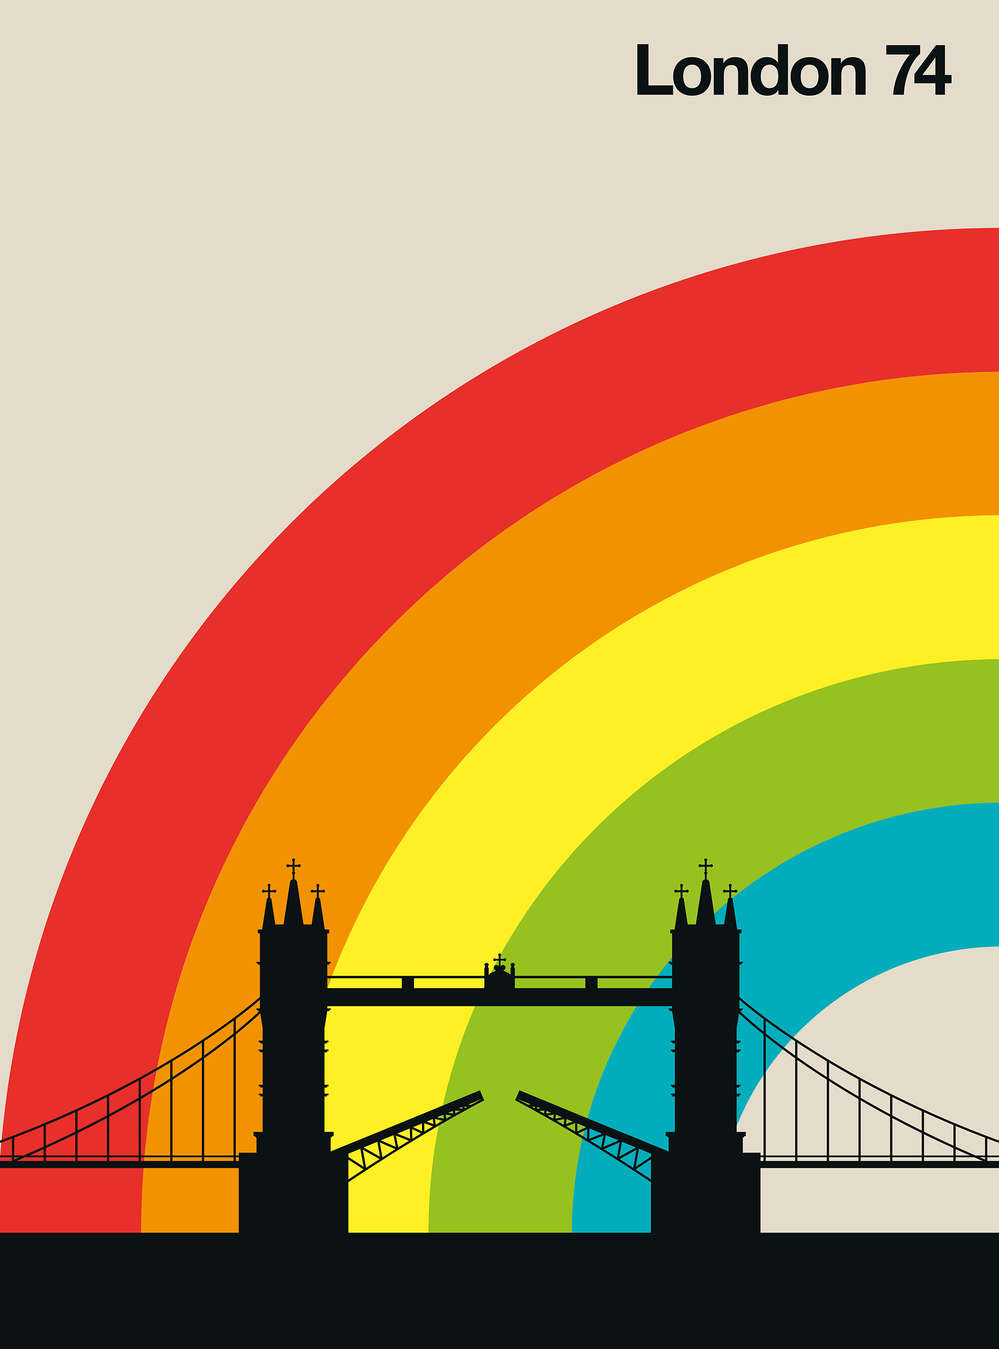             Retro Behang Londen Tower Bridge & Regenboog
        